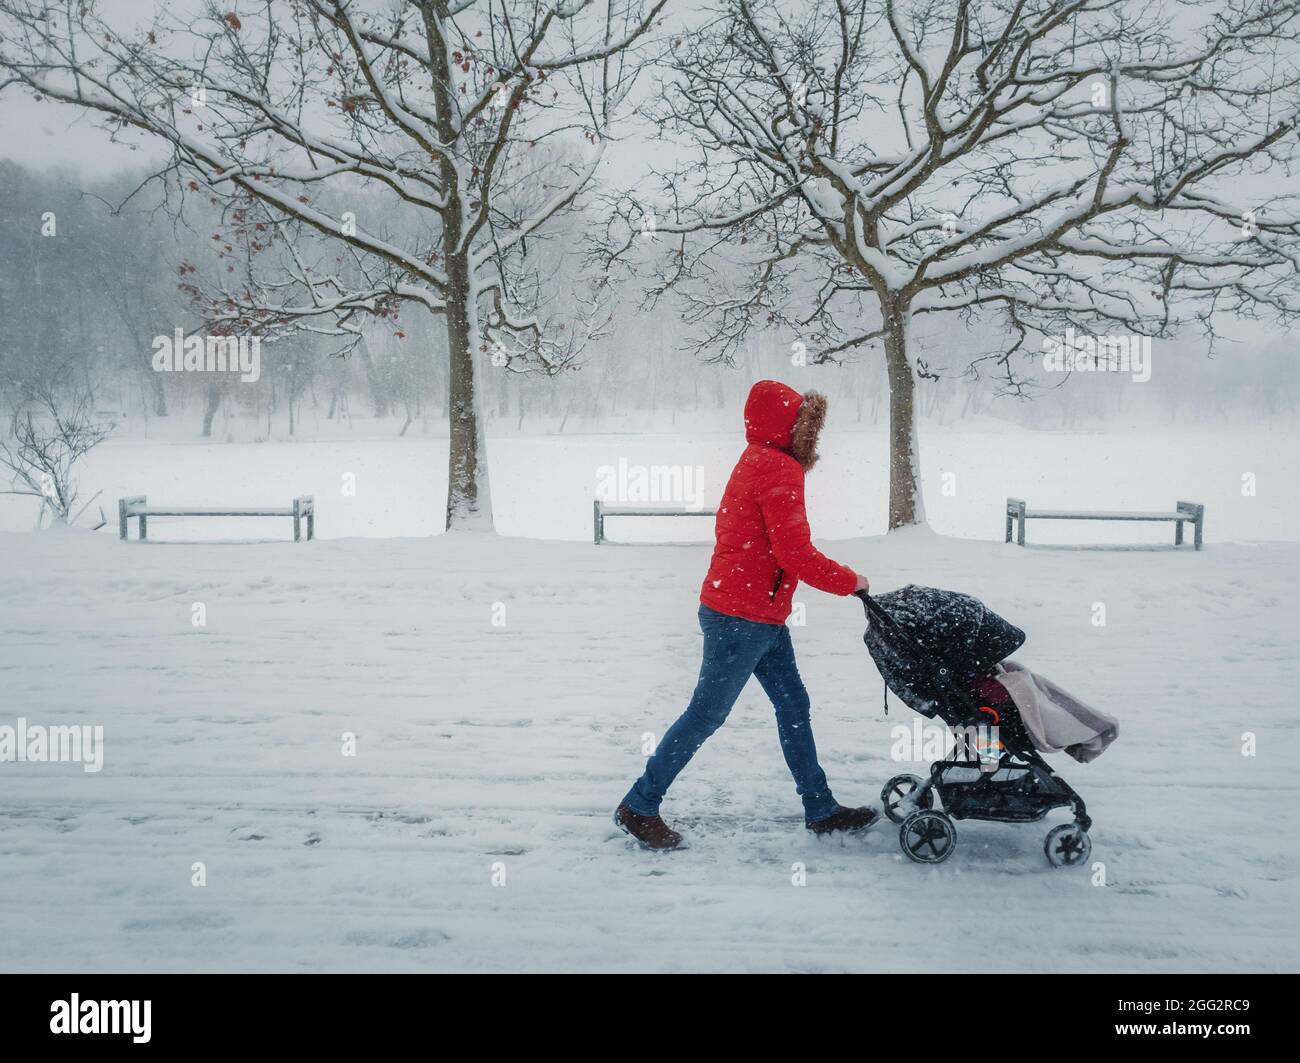 Scène d'hiver enneigée avec une maman poussant un bébé en train de marcher dans le parc dans un matin d'hiver enneigé. Photographie de rue scène saisonnière avec chute de neige Banque D'Images